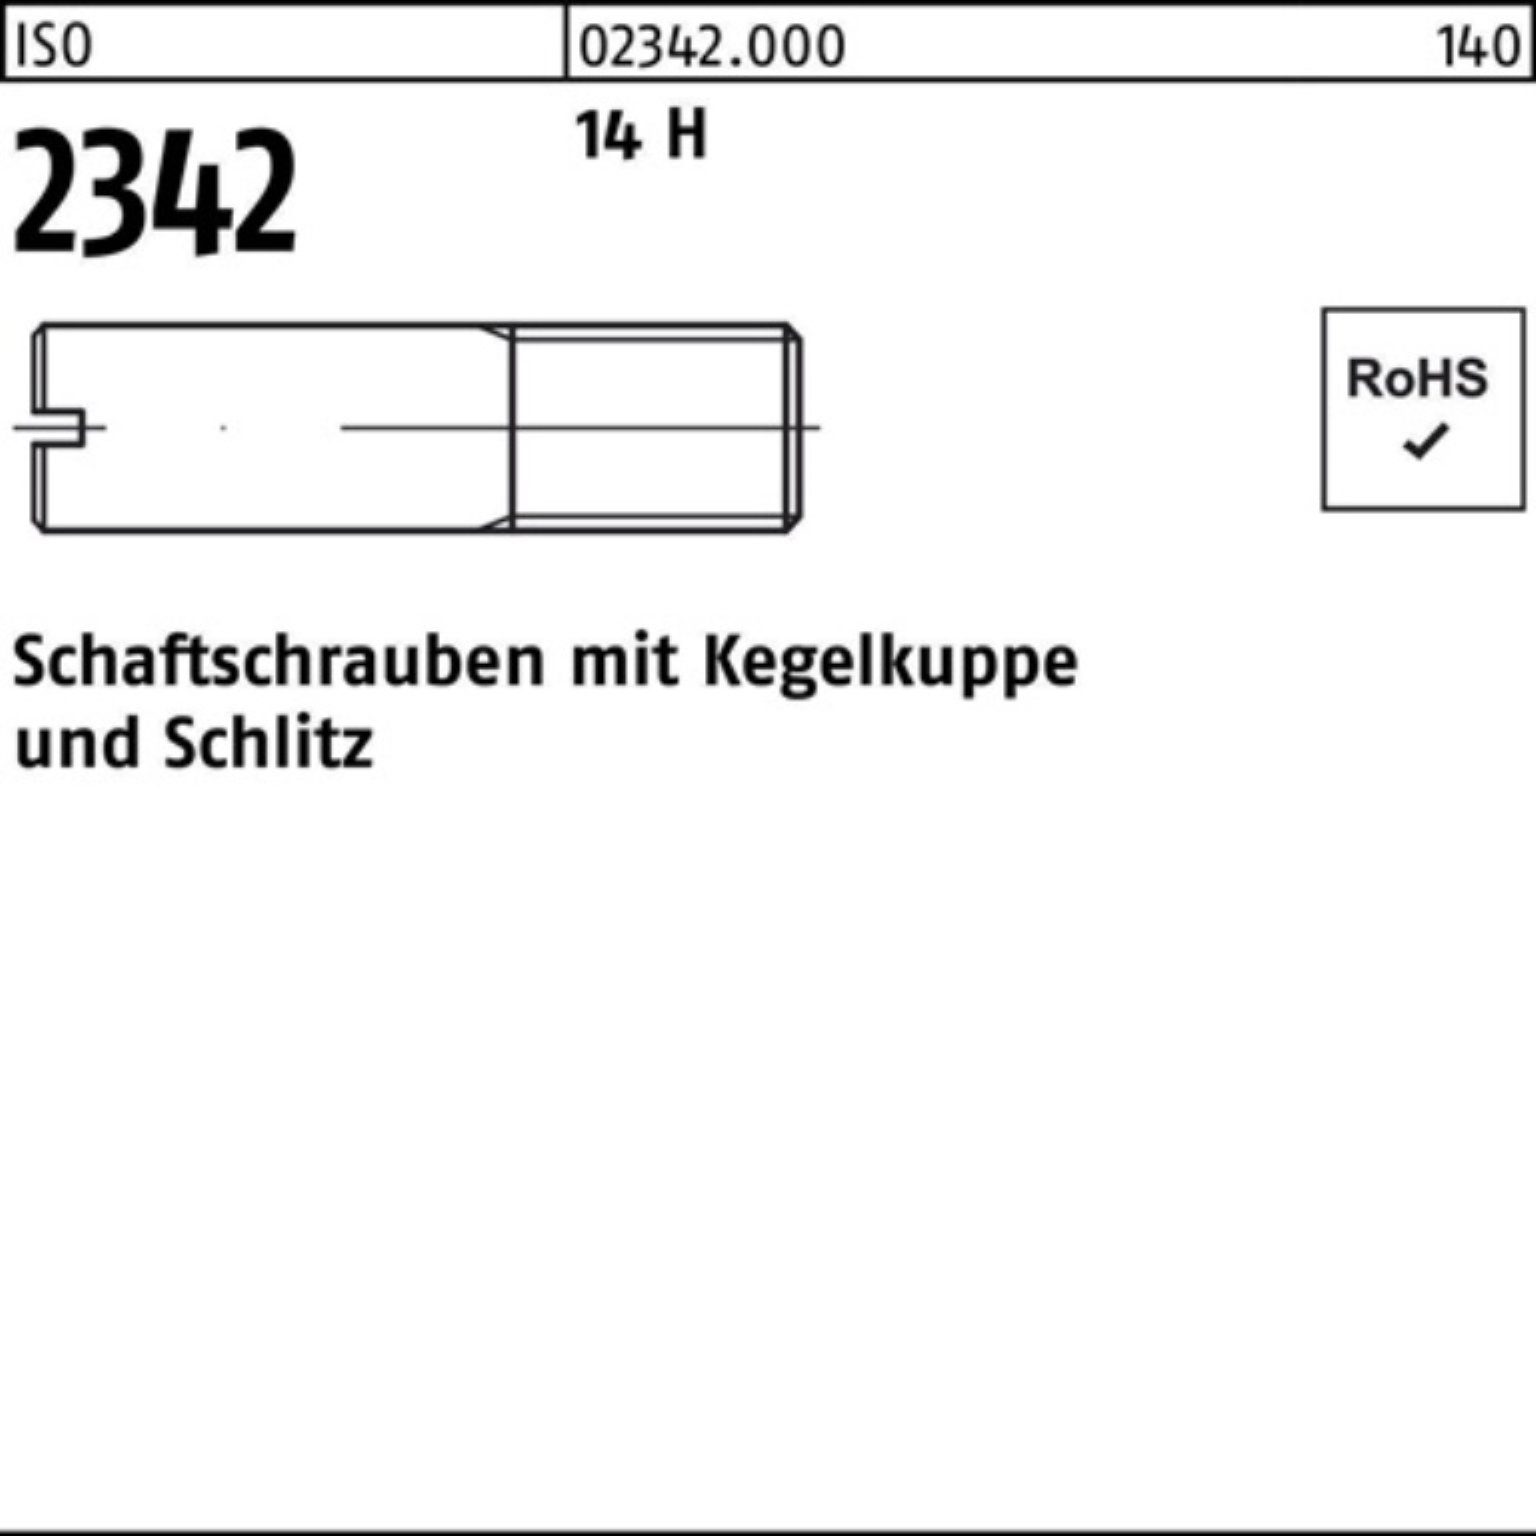 Reyher Schraube 100er Pack Schaftschraube ISO 2342 Kegelkuppe/Schlitz M6x 16 14 H 100